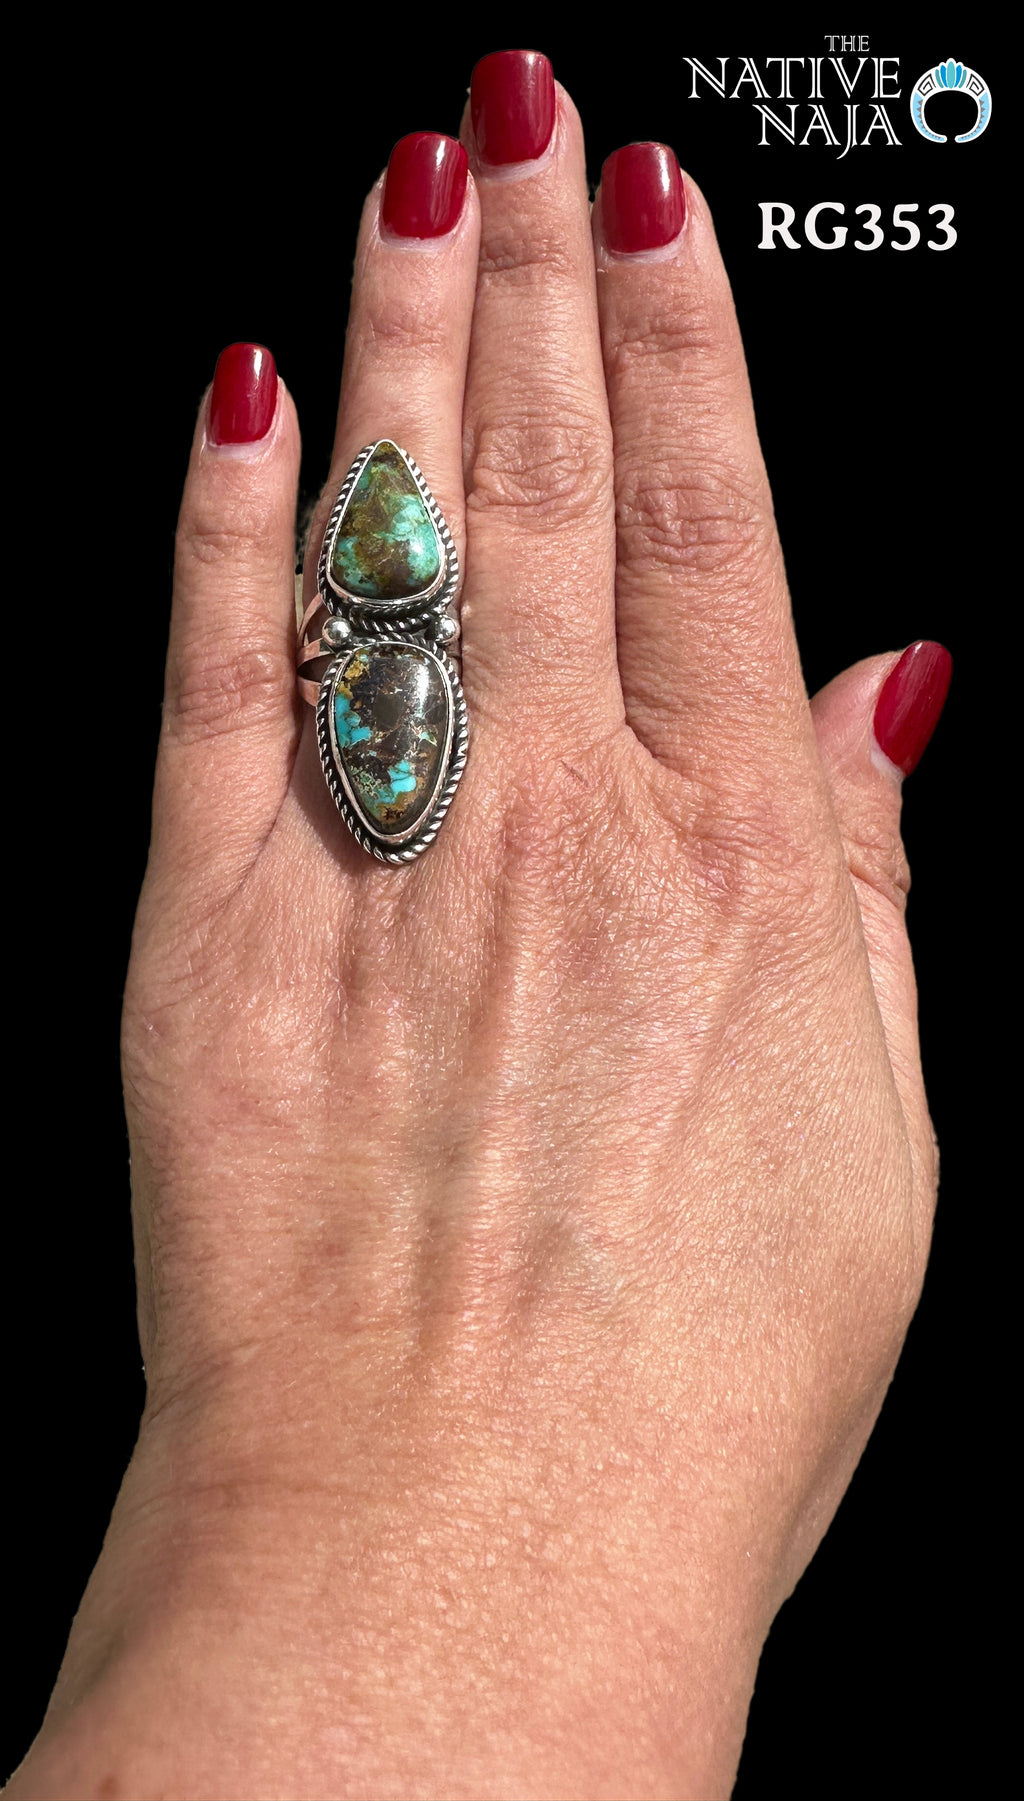 Navajo Artist LaRosa Ganadonegro Large Sterling Silver & Candelaria Turquoise Ring SZ 8 RG353